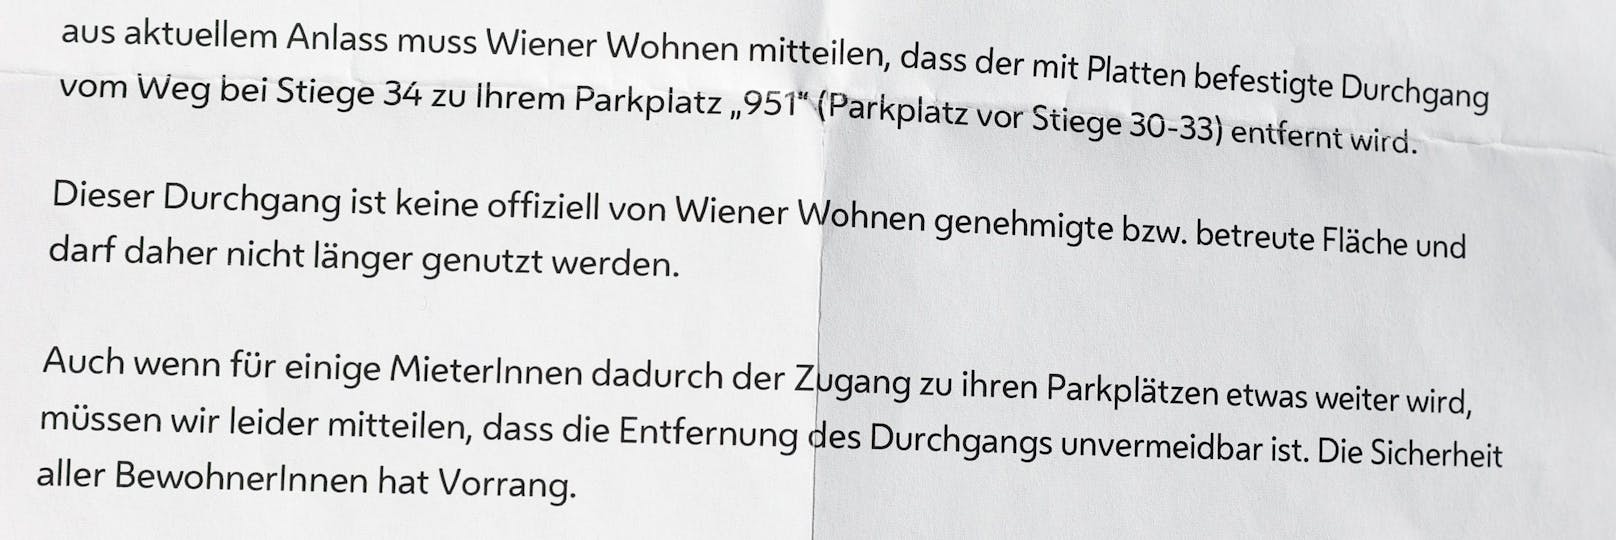 Schreiben von Wiener Wohnen zur Entfernung des Durchganges.